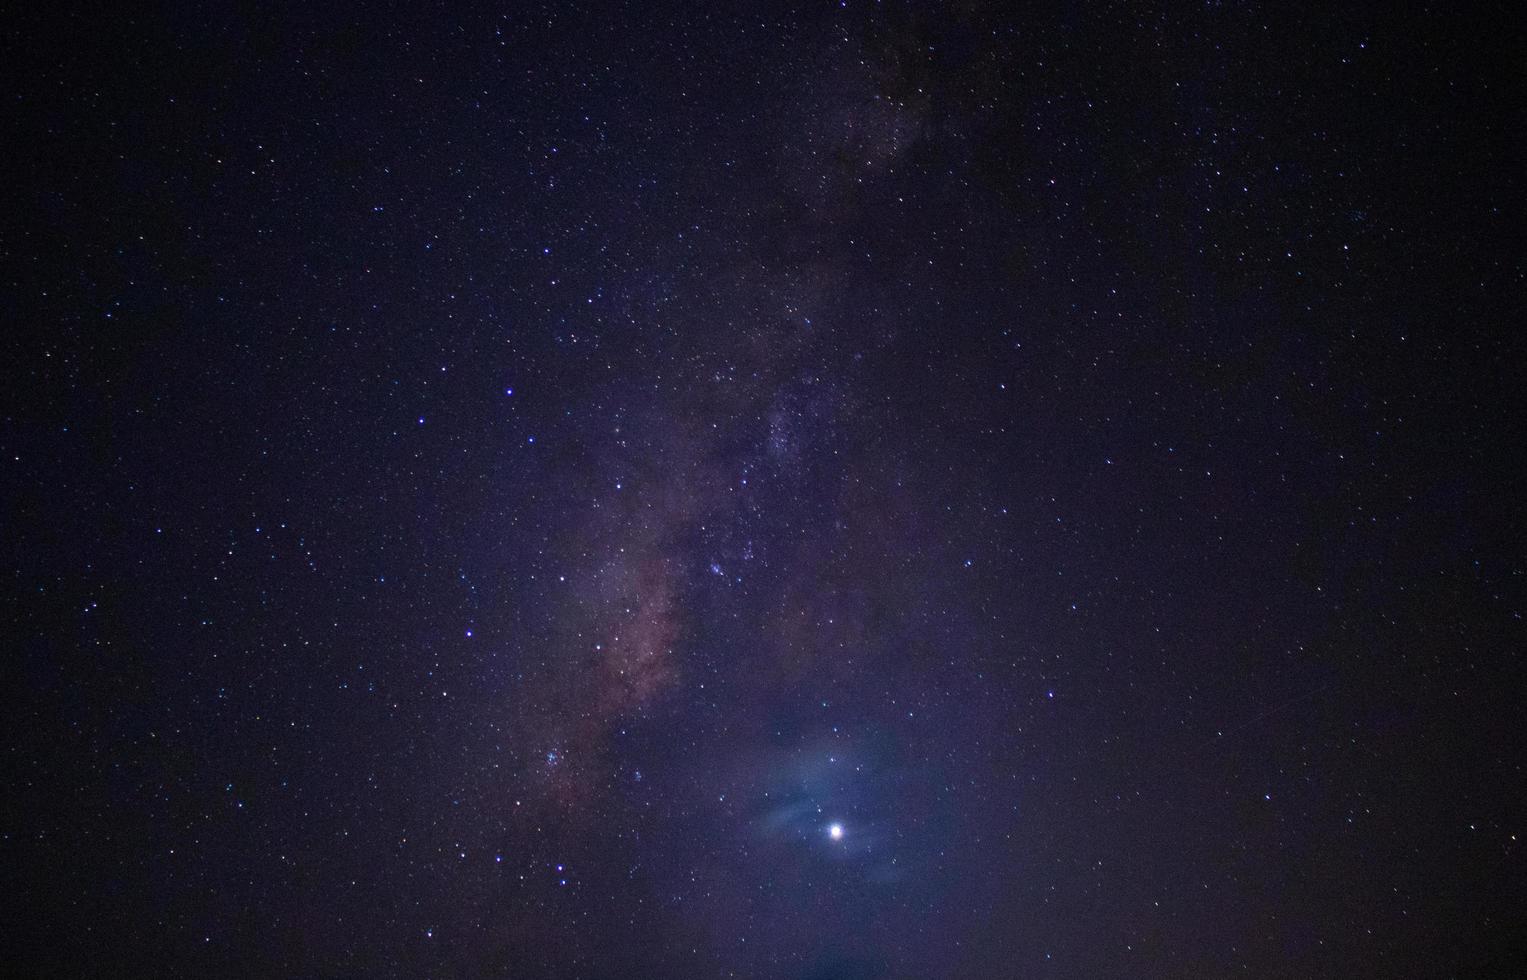 Galaxiehintergrund buntes Universum mit und sternenklarer Nacht. foto